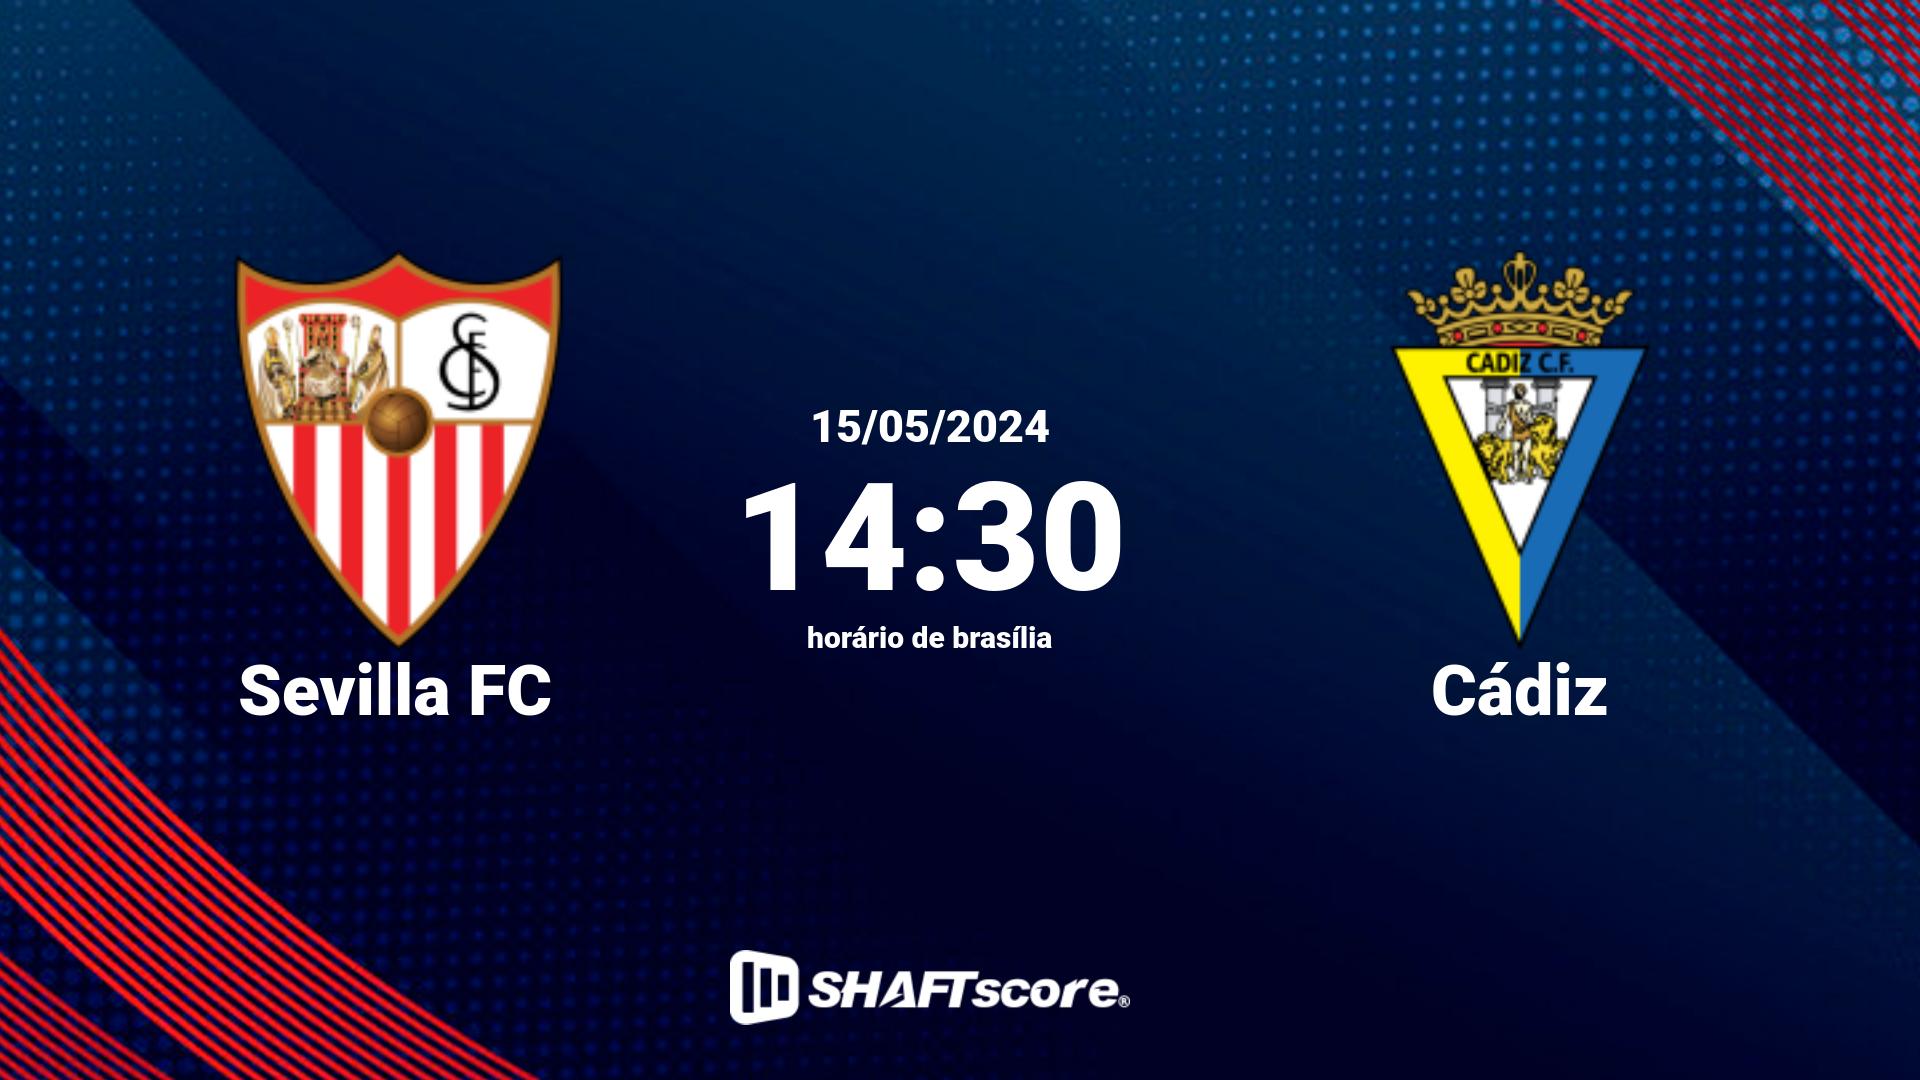 Estatísticas do jogo Sevilla FC vs Cádiz 15.05 14:30